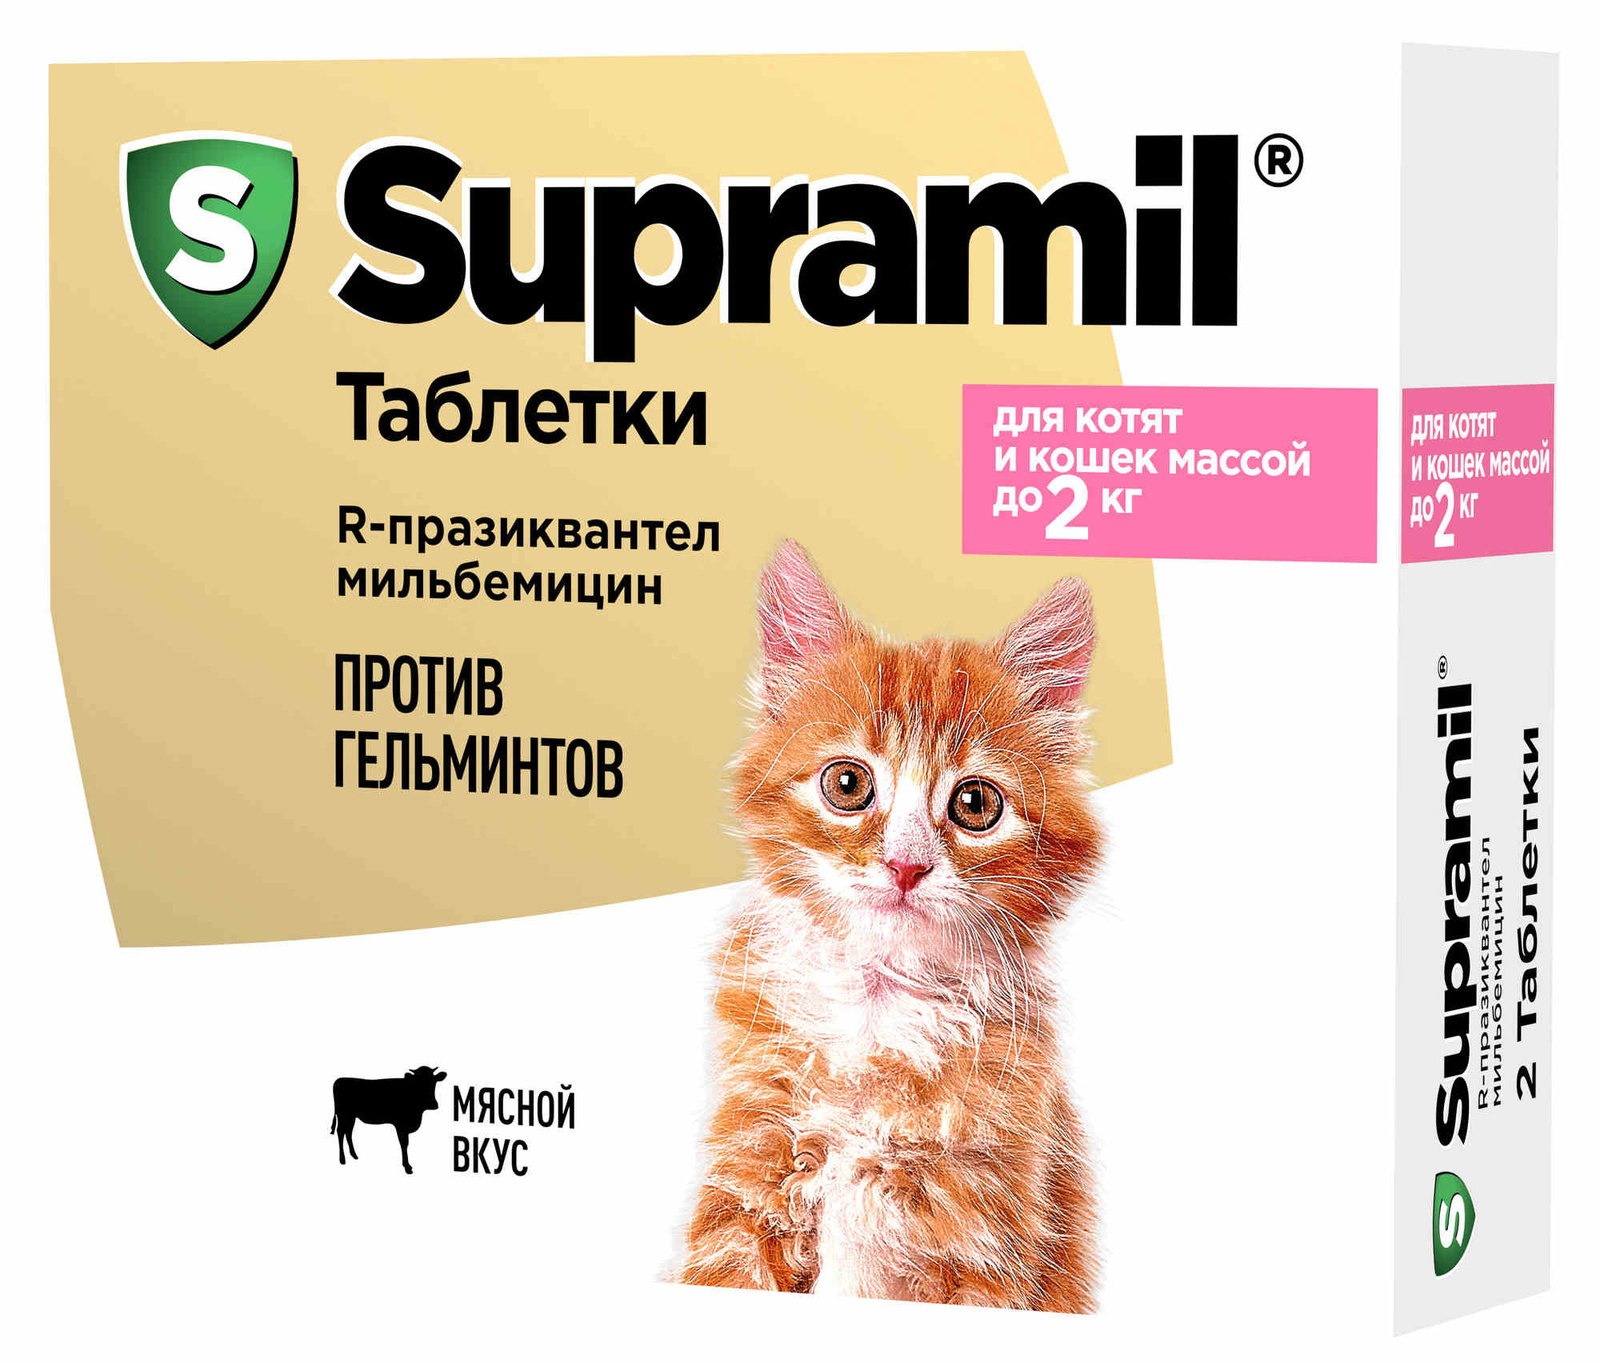 Астрафарм антигельминтный препарат Supramil  для котят и кошек массой до 2 кг (таблетки) (2 таб.)